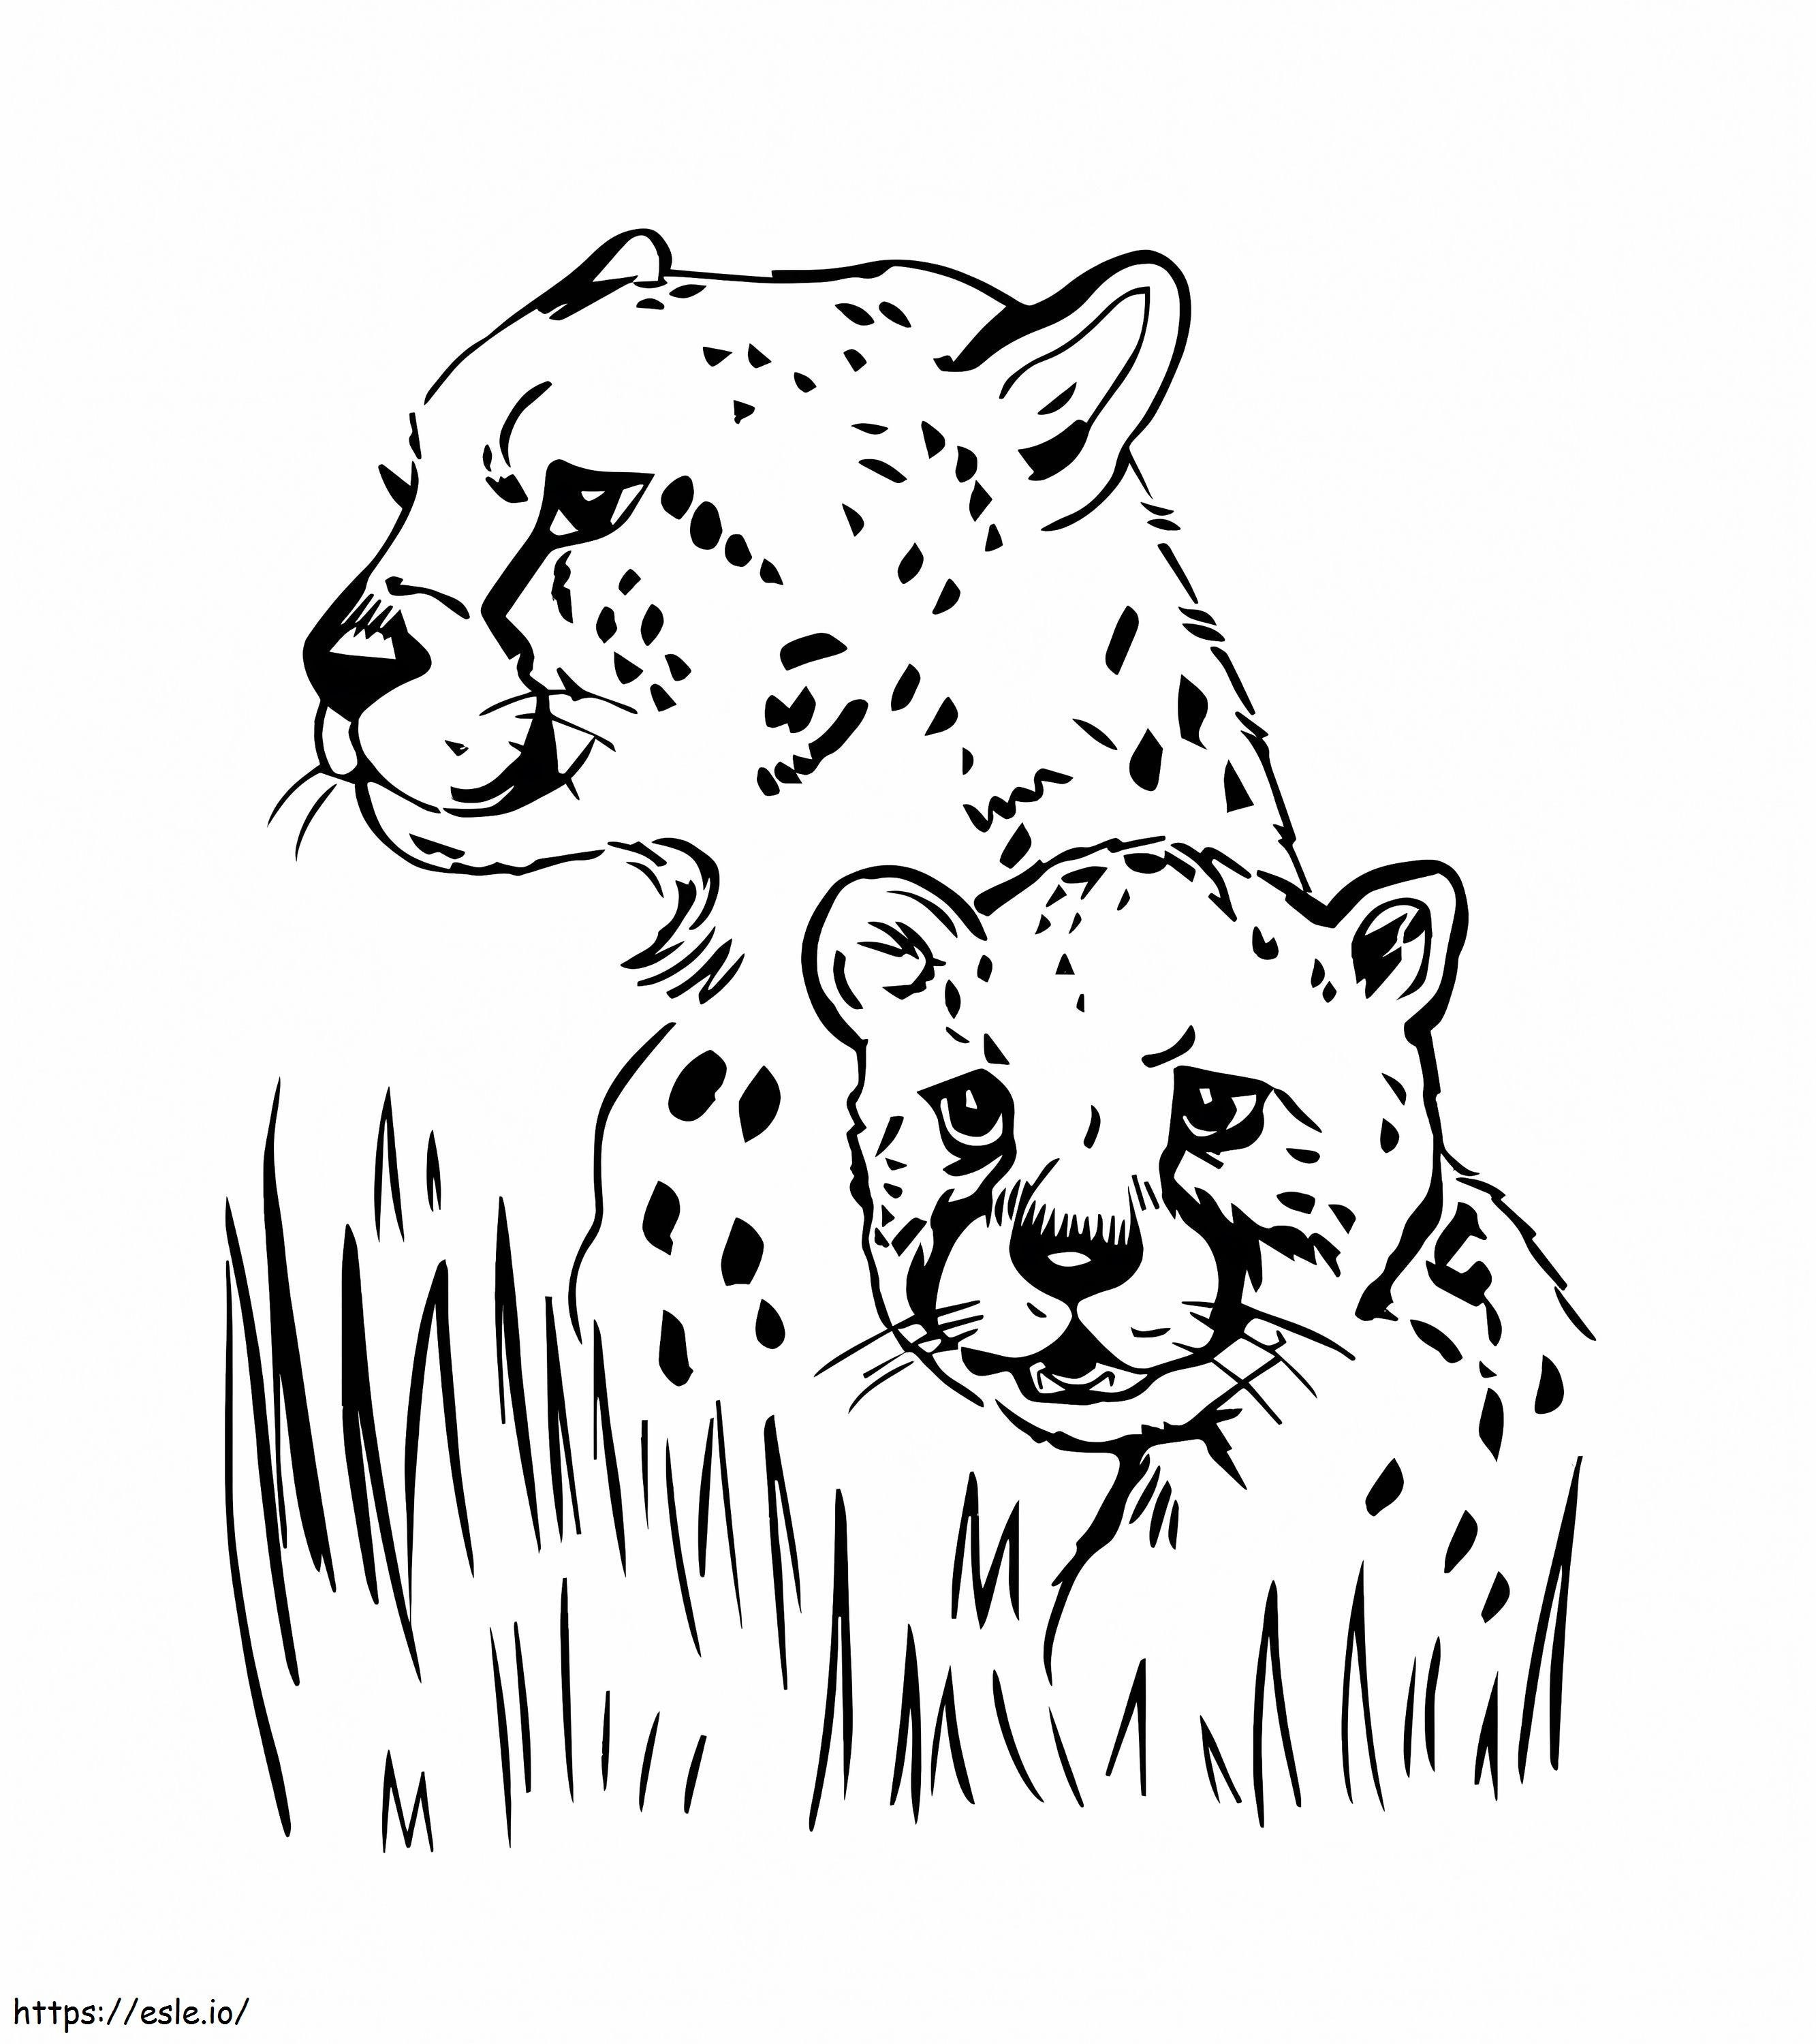 Dwa portrety Jaguara kolorowanka